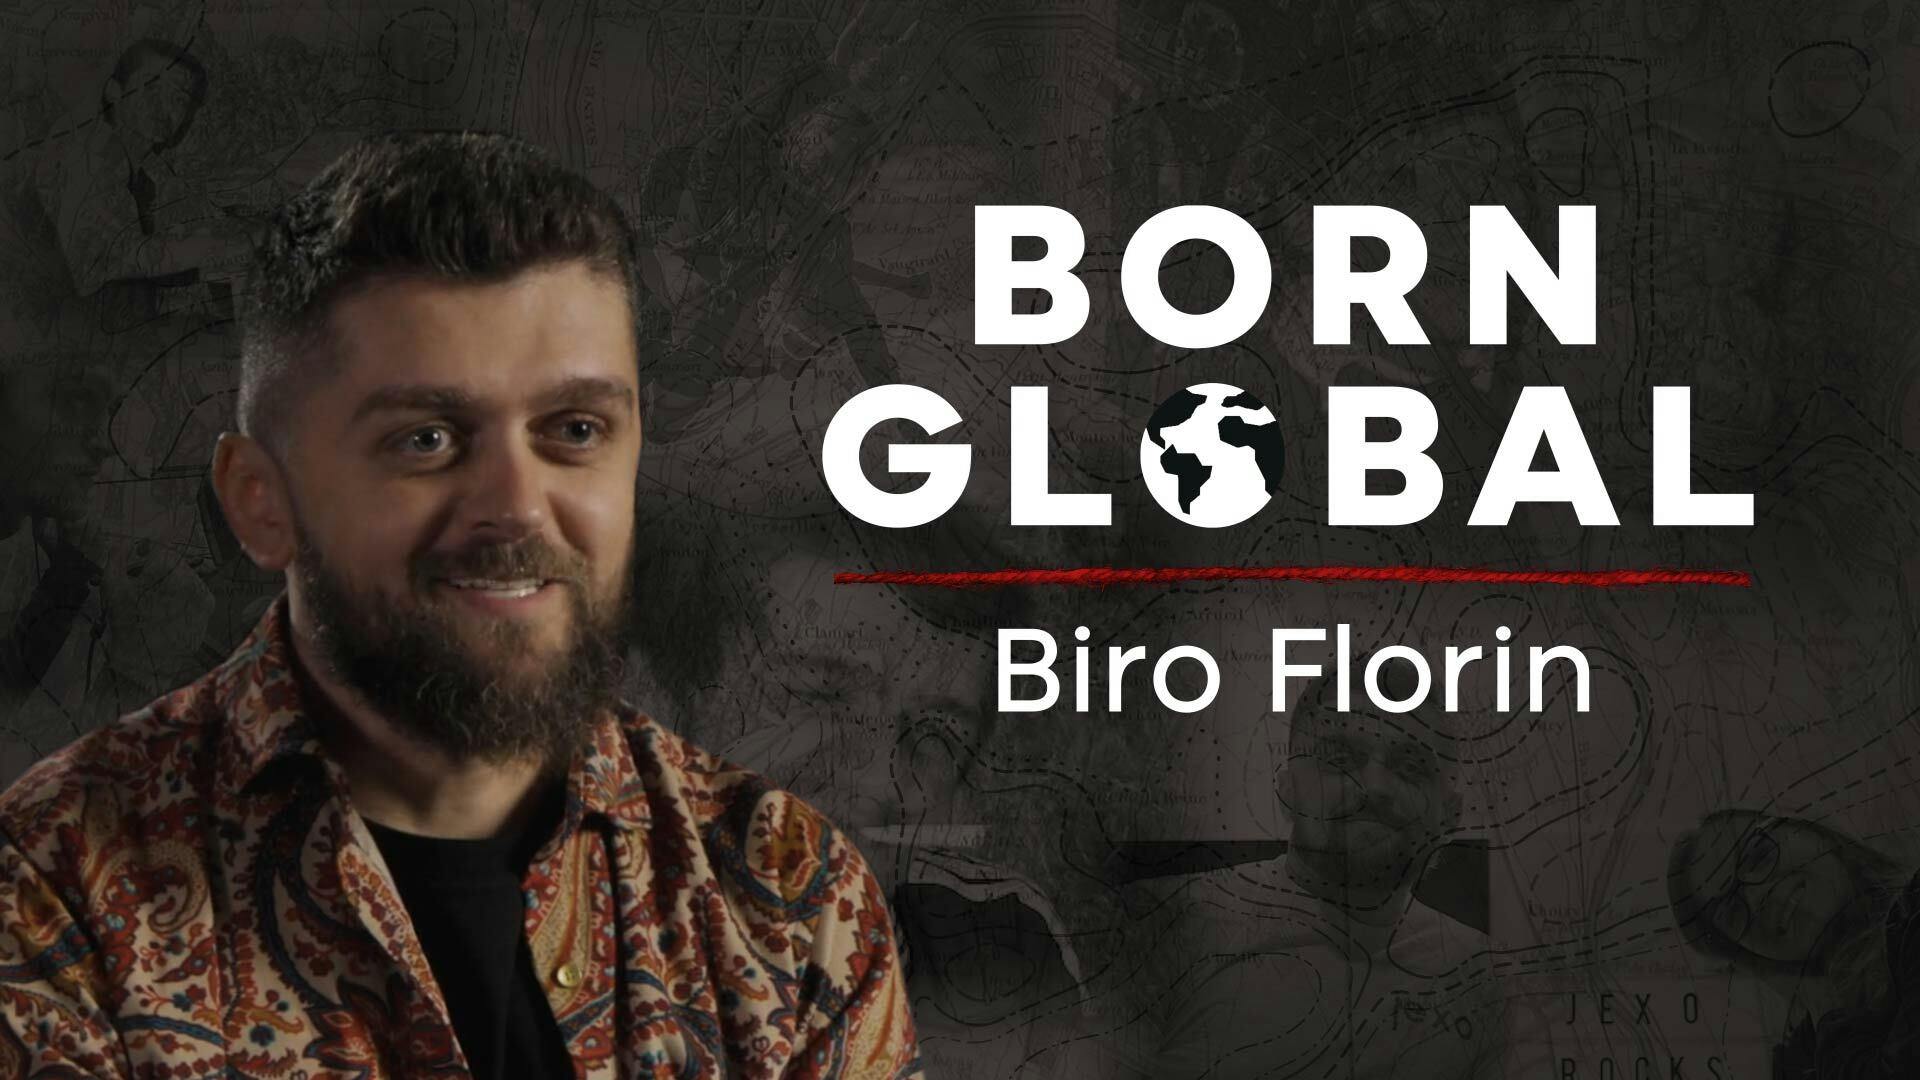 Born Global Thumbnail featuring Biro Florin